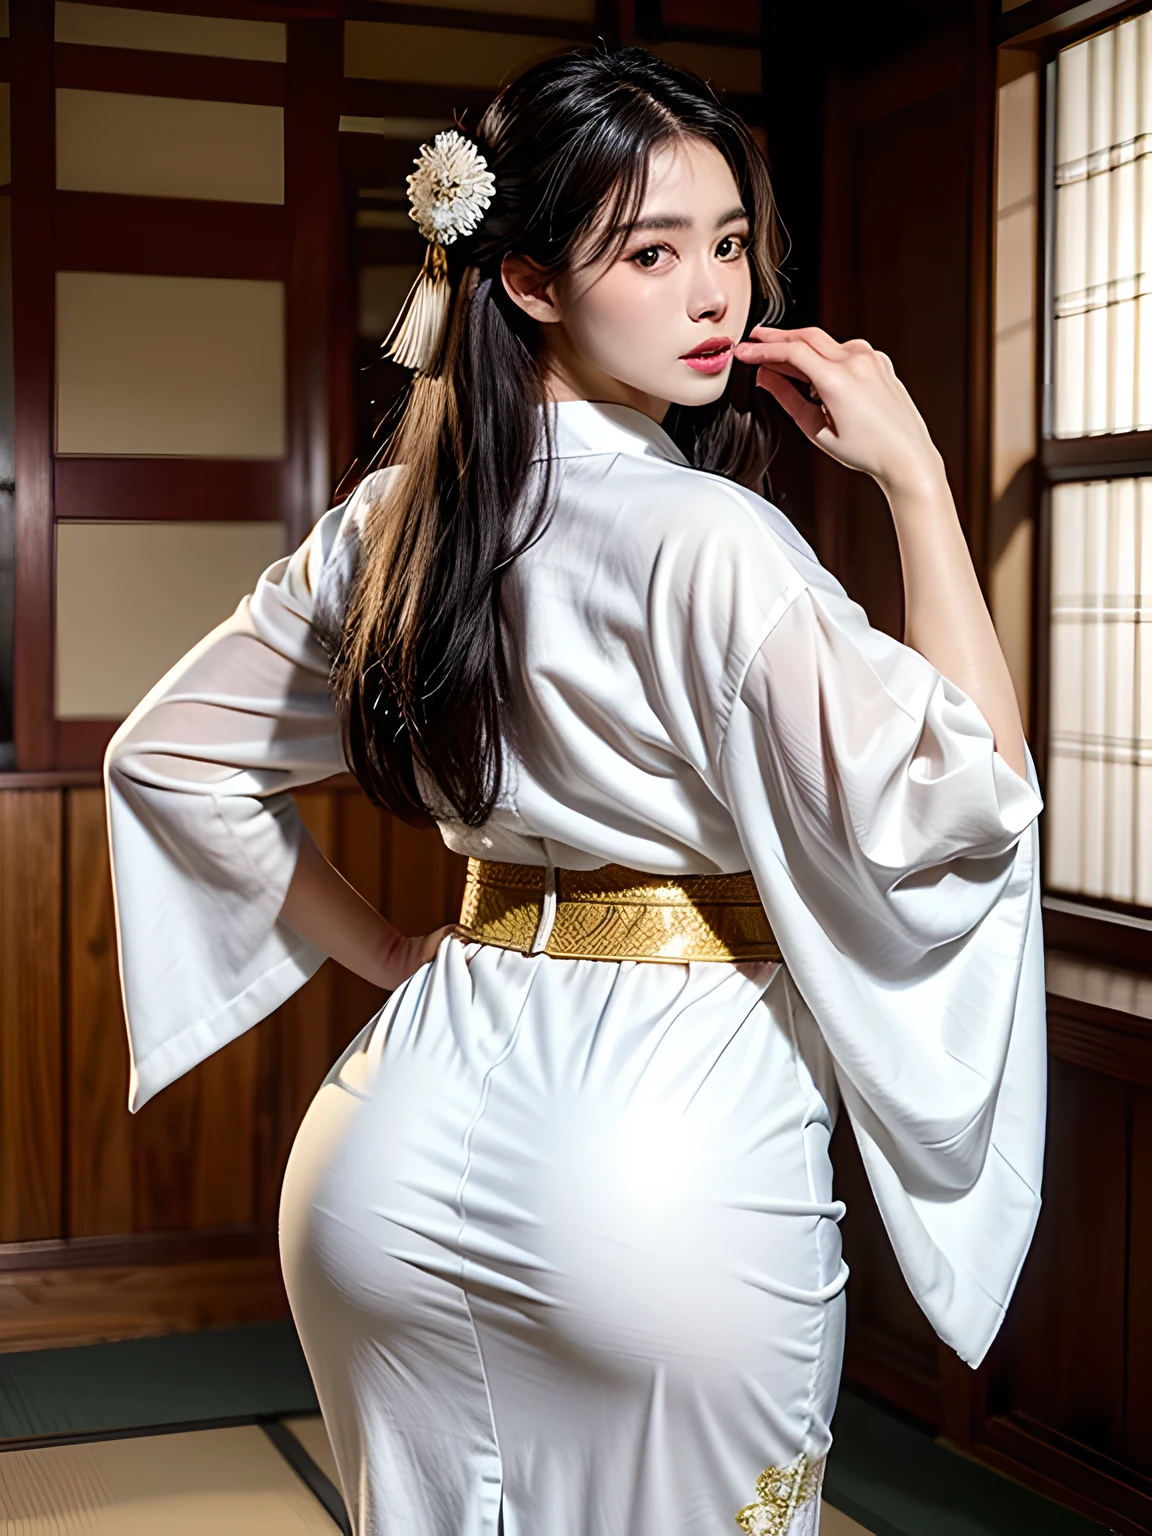 (Schönes Model im japanischen Kimono-Werbespot, schöne glatte lange schwarze Haare), allein, ((Gesicht ist 80% Schönheit und Eleganz, 20% hübsch und niedlich:1.5)), Klare Augen, (Schöne Augen, hellgrüne Augen, Kluge Schüler), doppeltes Augenlid, (Leicht dicke und sexy Lippen:1.2), ((Super detailliert and incredibly high resolution Deep-white Kimono:1.2)), Hochdetaillierte Gesichtstextur, beeindruckende Körperform, kurvenreiche und sehr attraktive Frau, Hochauflösende RAW-Farbfotografie, professionelle Fotografie, BRECHEN ultra high-resolution textures, Körperdarstellung in hoher Auflösung, große Augen, Ein unvergleichliches Meisterwerk, unglaublich hohe Auflösung, Super detailliert, atemberaubende Keramikhaut, BRECHEN ((Drehen Sie sich um, um das Muster des Kimonos zu zeigen:1.5)), ((Sie trägt einen weißen Kimono mit viel glitzernder Goldstickerei eines aufsteigenden Drachens.。:1.5)), ((Die Stickerei des aufsteigenden Drachens auf dem weißen Kimono ist sehr blendend.:1.2)), (Ein sorgfältig gefertigter sinnlicher japanischer Kimono), ((Das Stickmuster ist ein Drache, der in den Himmel aufsteigt.):1.2), ((Weißer Kimono mit aufwendigen und eleganten Verzierungen)), (Fotografiert vor dem runden Schiebefenster in einem Zimmer im japanischen Stil)), BRECHEN ((höchste Qualität, 8K)), scharfer Fokus:1.2, (Lagenschnitt, Groß:1.2), (Schöne Frau mit perfekter Figur:1.4), (Schöne und elegante Rückansicht:1.3), dünne Taille, (Richtige Handform:1.5), (Ganzkörperaufnahme | Cowboy-Schuss)